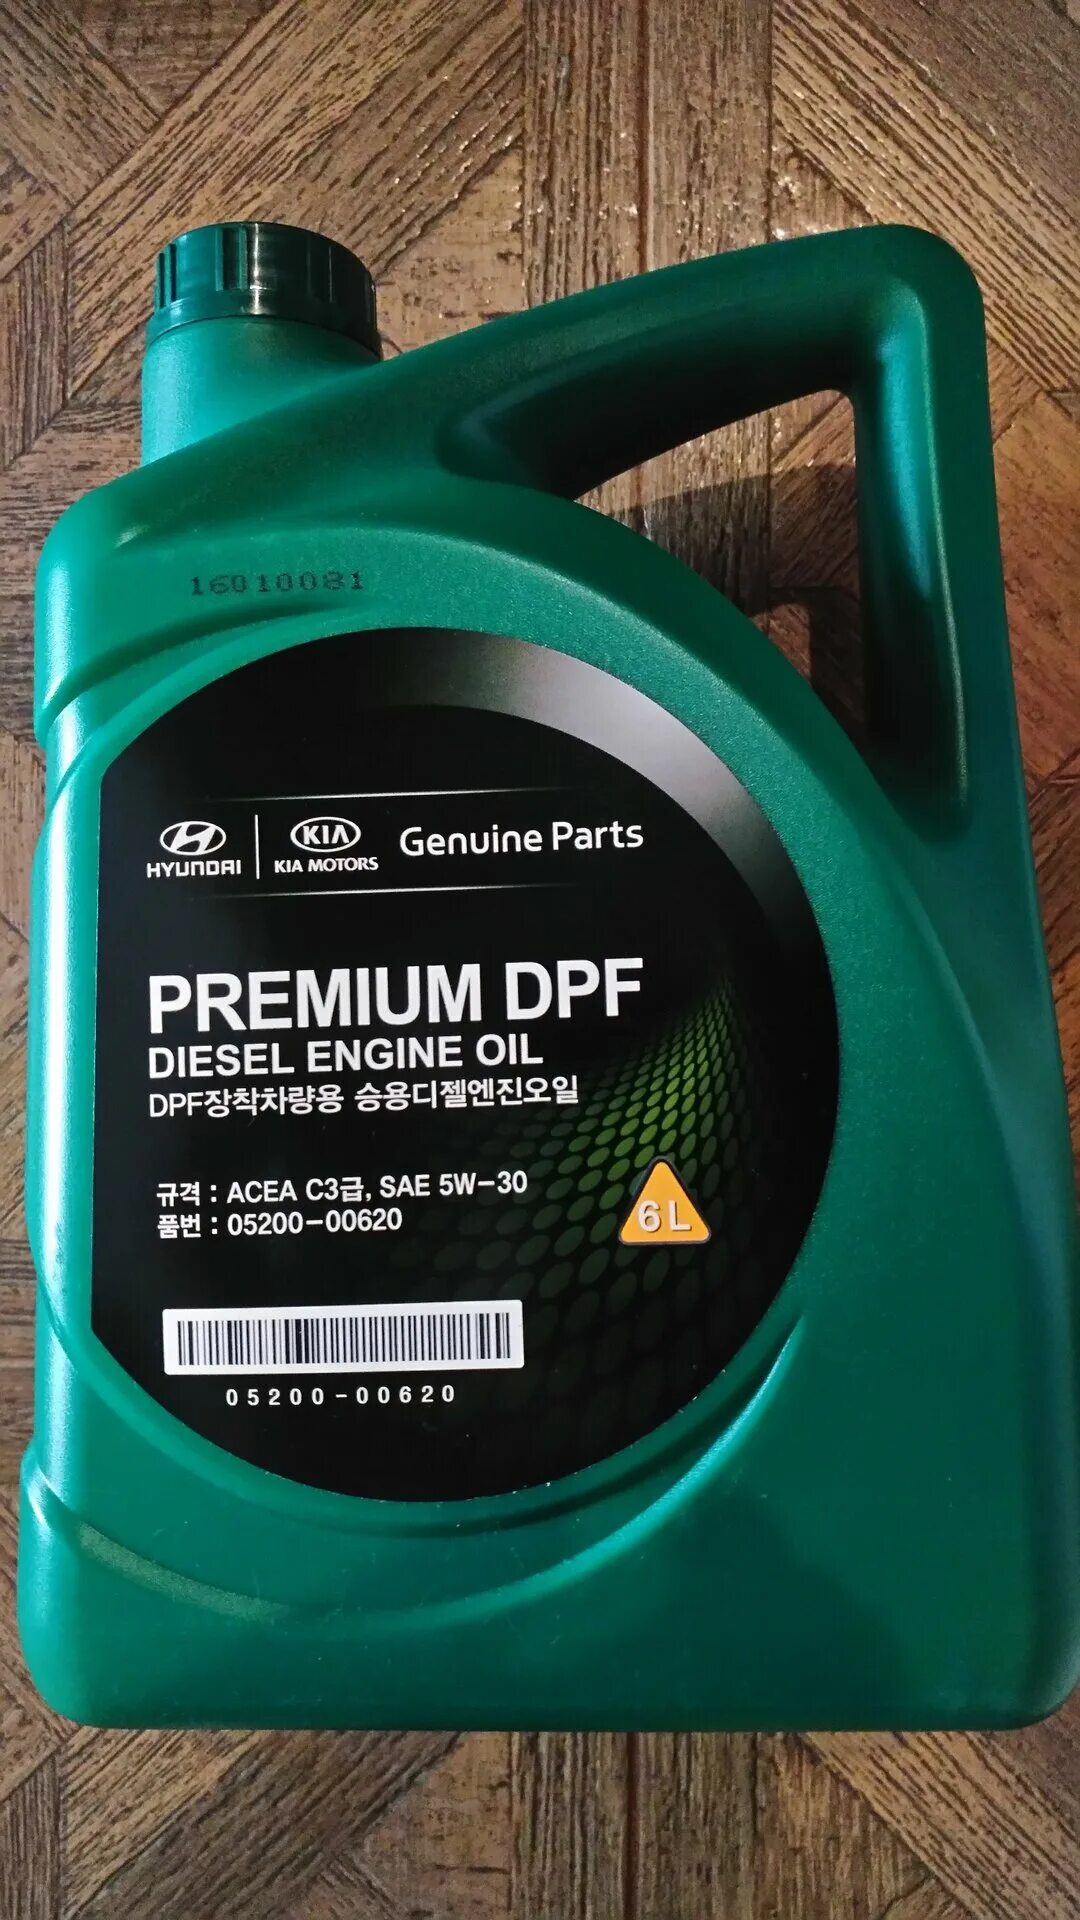 Premium DPF Diesel 5w-30. Масло mobis Premium DPF Diesel 5w-30. Hyundai Kia Premium DPF 5w-30 6 л. Mobis Premium DPF Diesel 5w-30, 6 n. Масло premium dpf diesel 5w 30